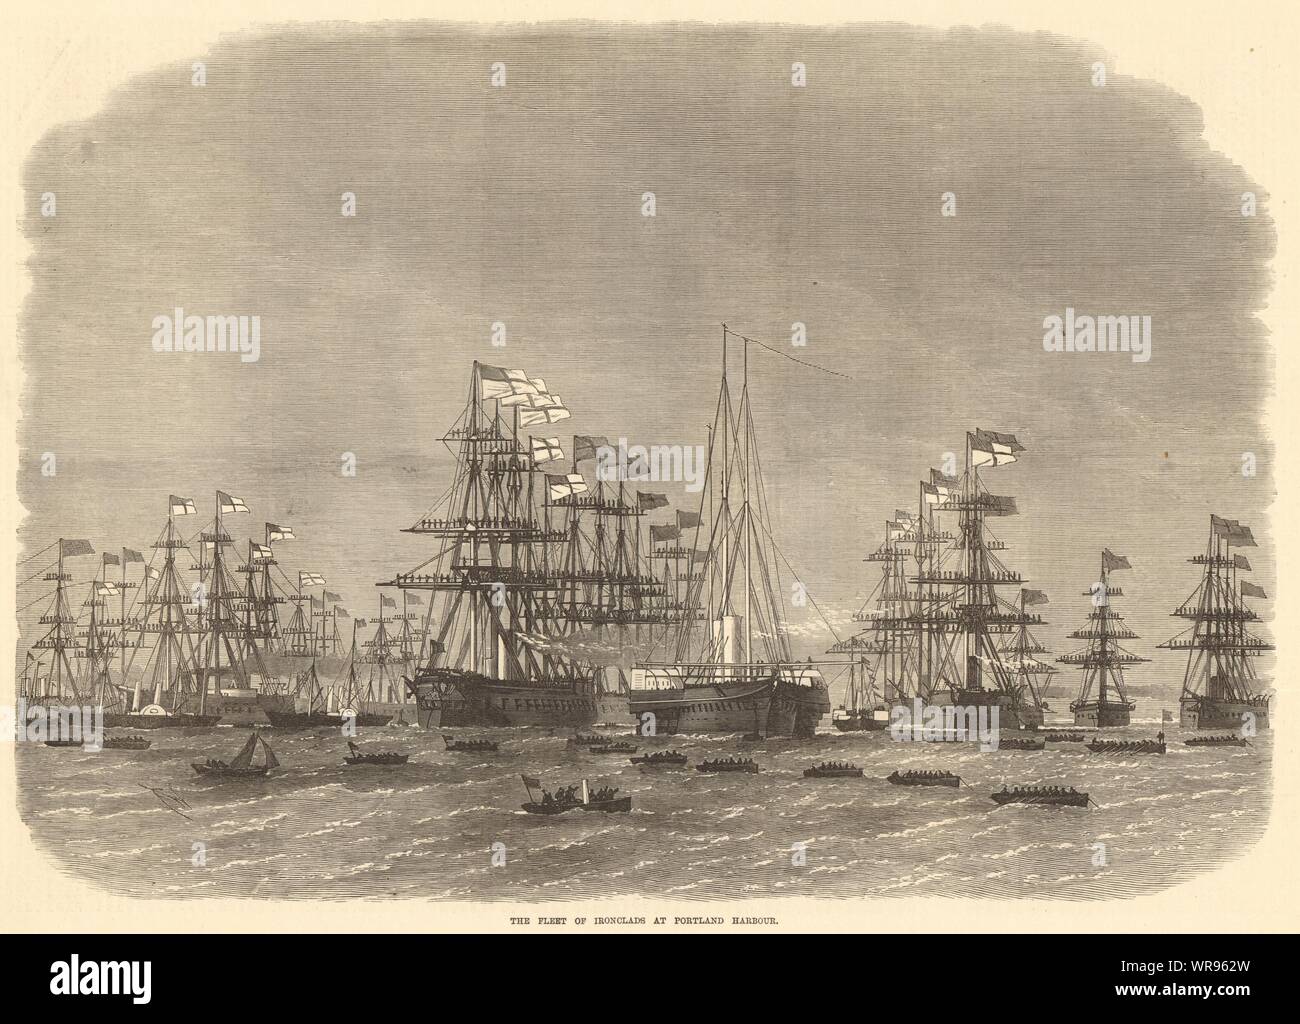 La flotte de cuirassés à Portland Harbour. Le Dorset. 1872 Navires pleine page ILN Banque D'Images